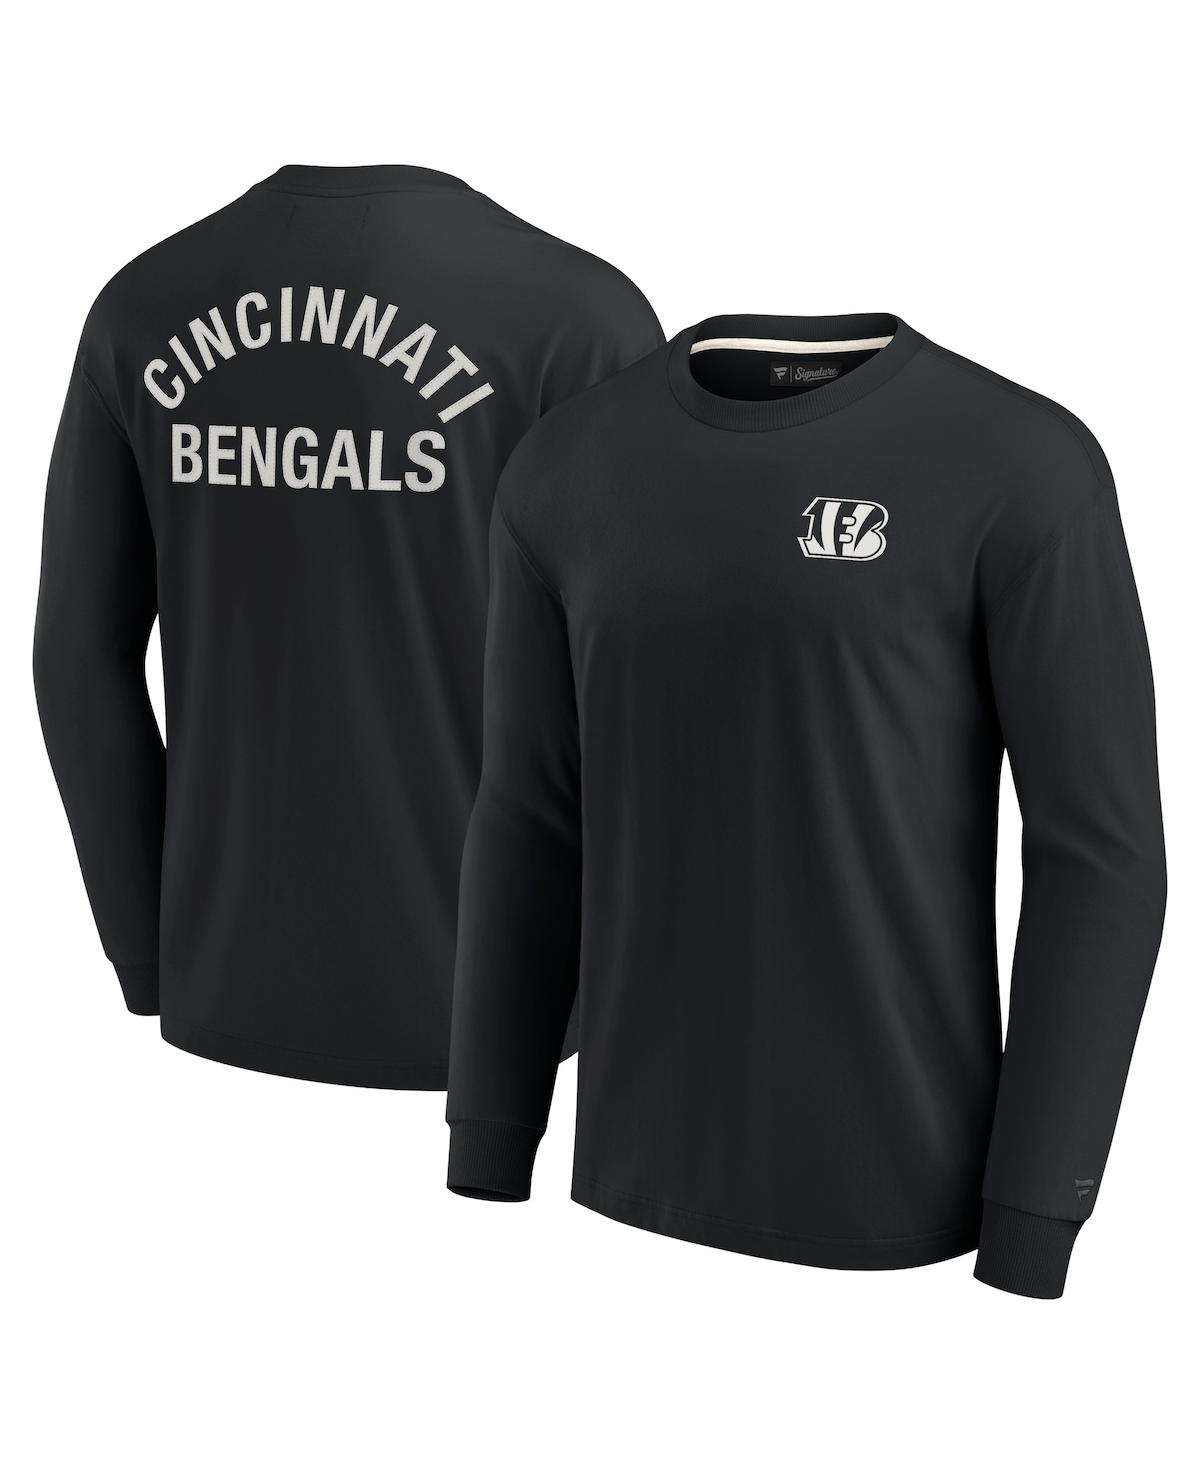 Fanatics Signature Men's And Women's  Black Cincinnati Bengals Super Soft Long Sleeve T-shirt